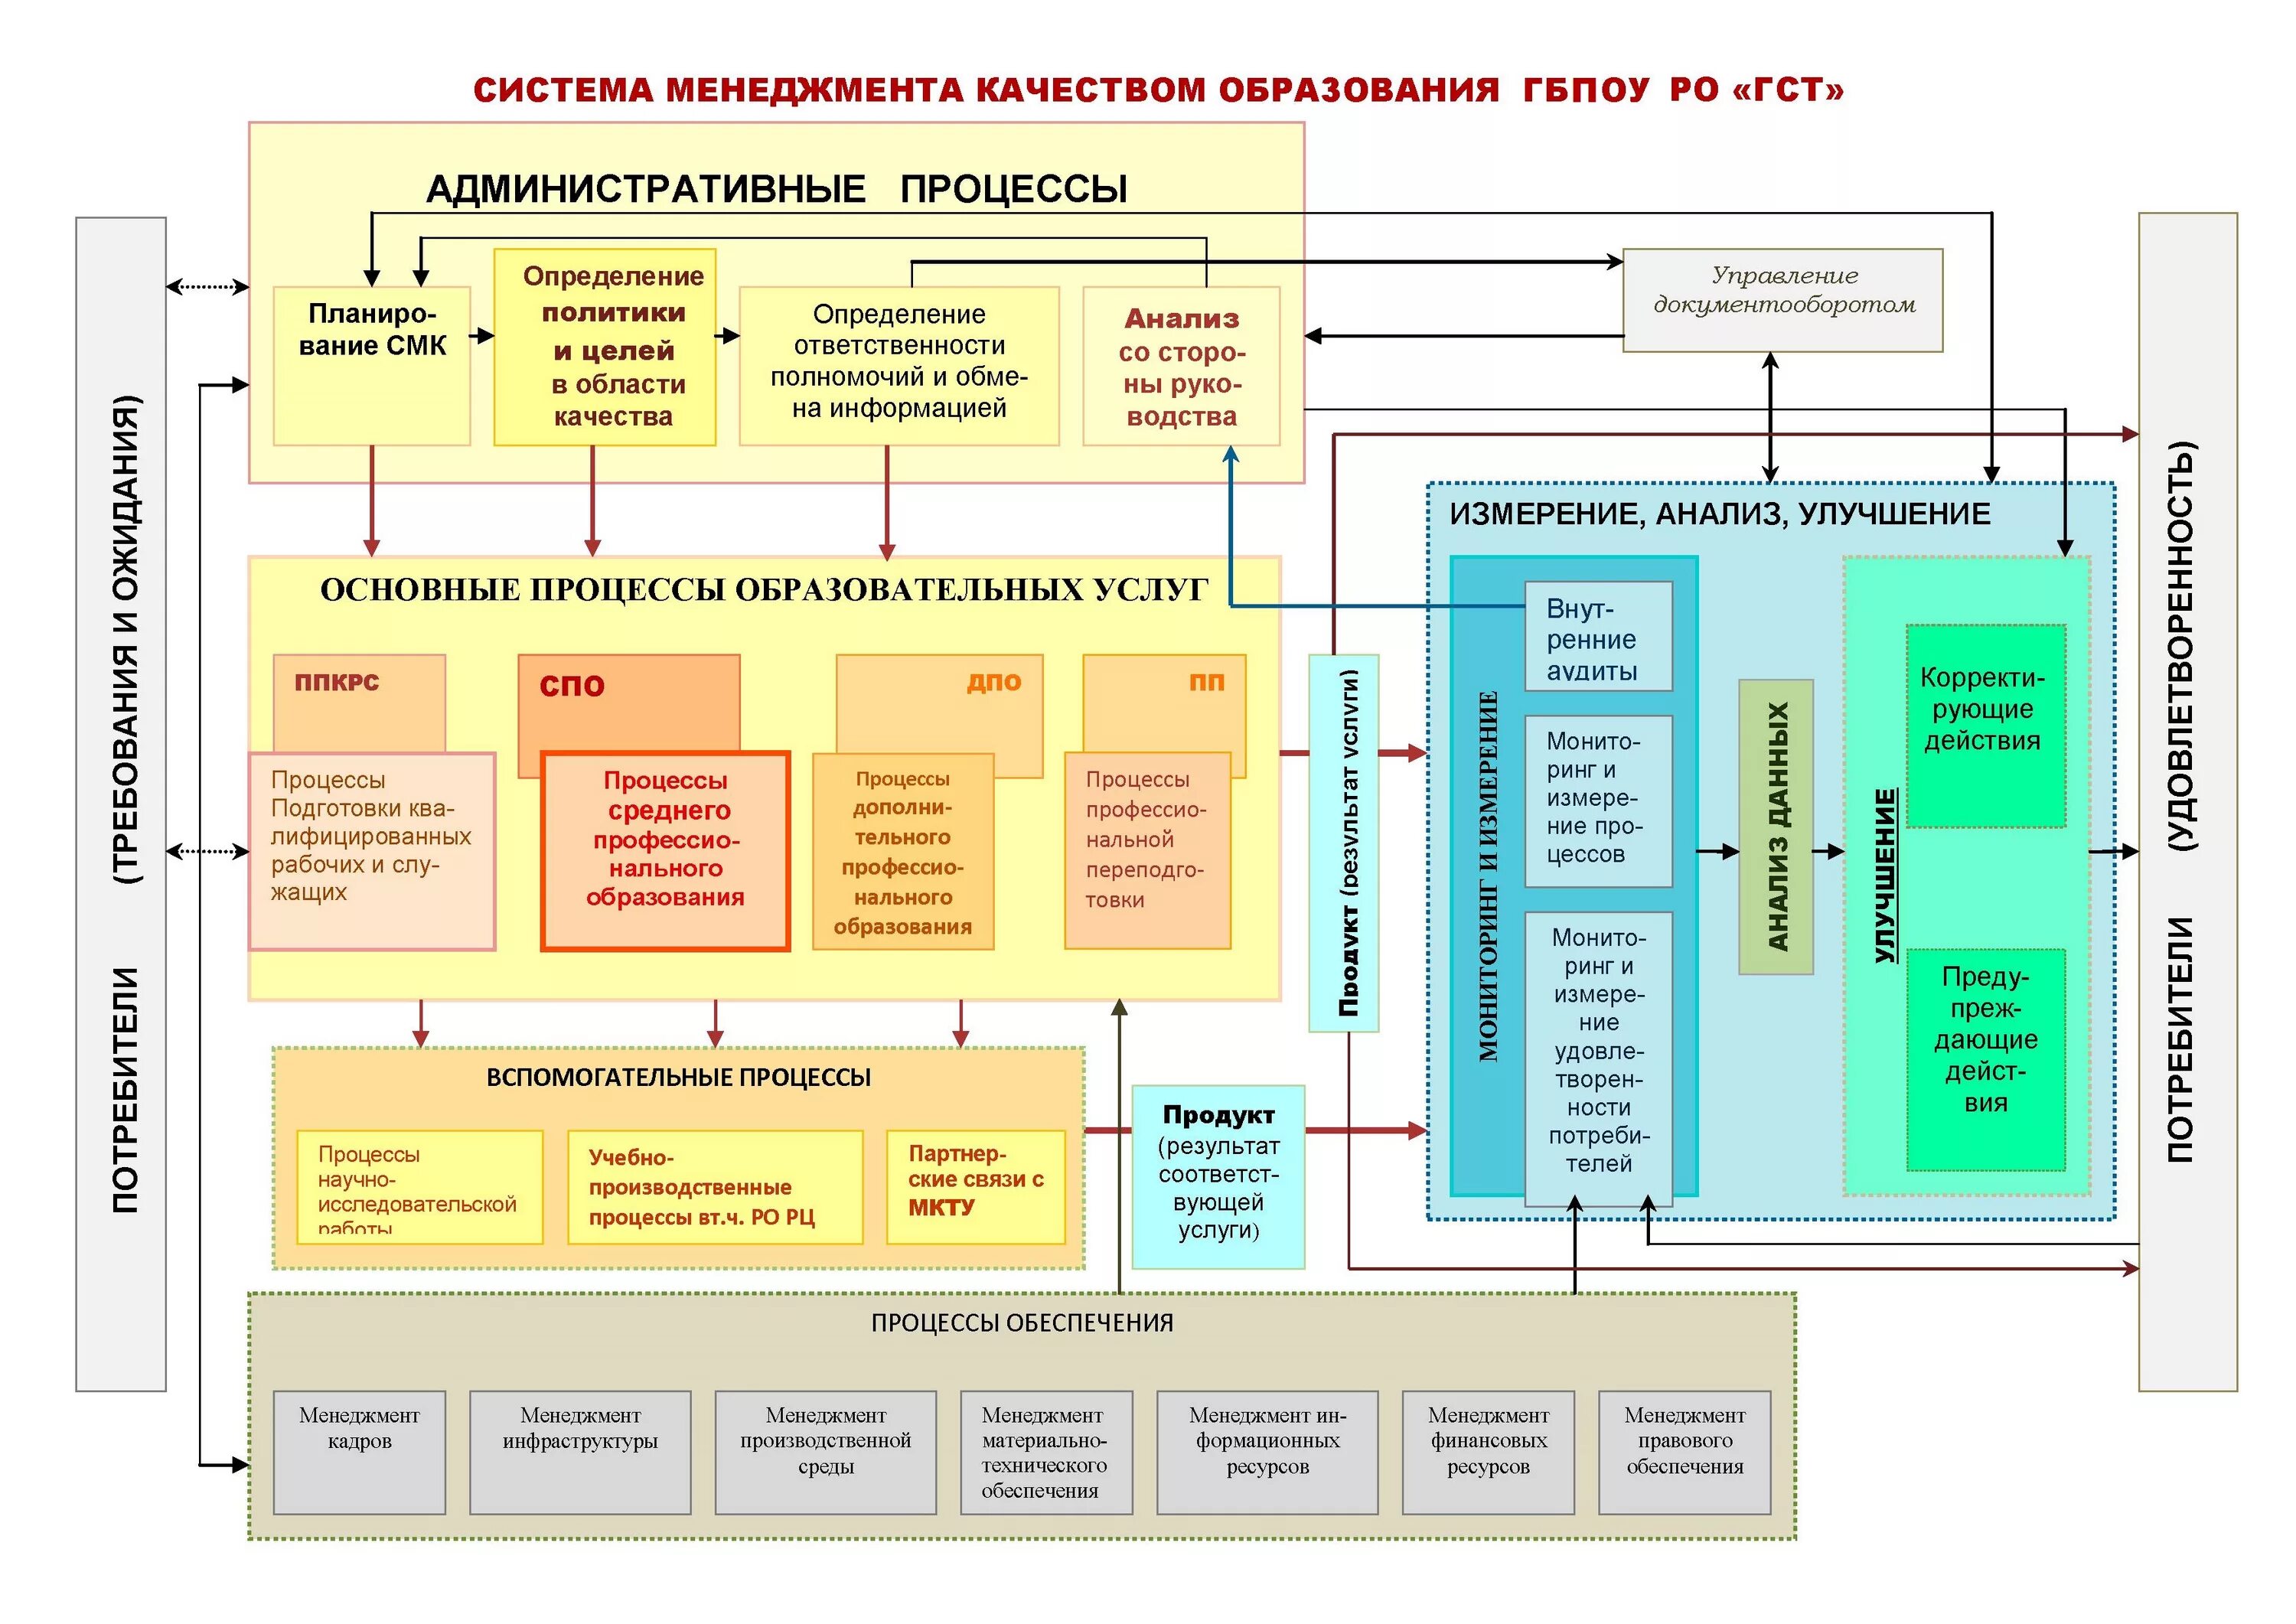 Карта смк. Управление системой в СМК. Схема процессов СМК на предприятии. Схема взаимодействия процессов СМК 9001-2015. Процессы системы менеджмента качества на предприятии.